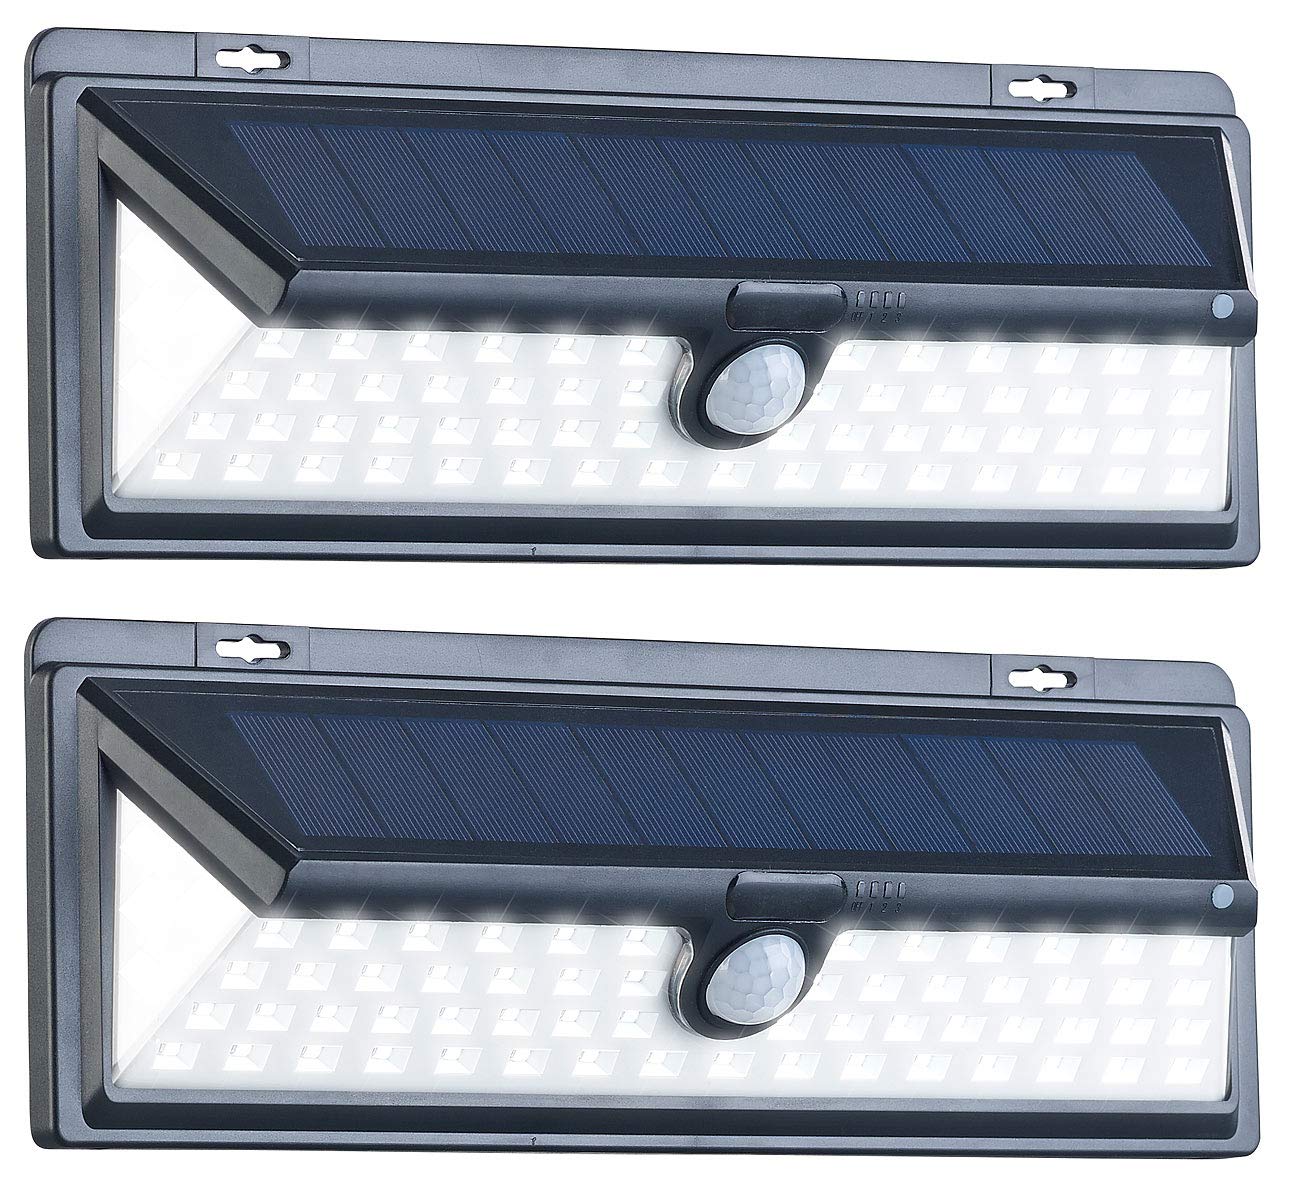 Luminea Solar Außenleuchten: 2er-Set Solar-LED-Wandleuchten, Bewegungs-Sensor, Akku, 800 lm, 13,2 W (Solarleuchten außen, Balkon Solarleuchten, Dachrinnenleuchten Bewegungsmelder Funktion)